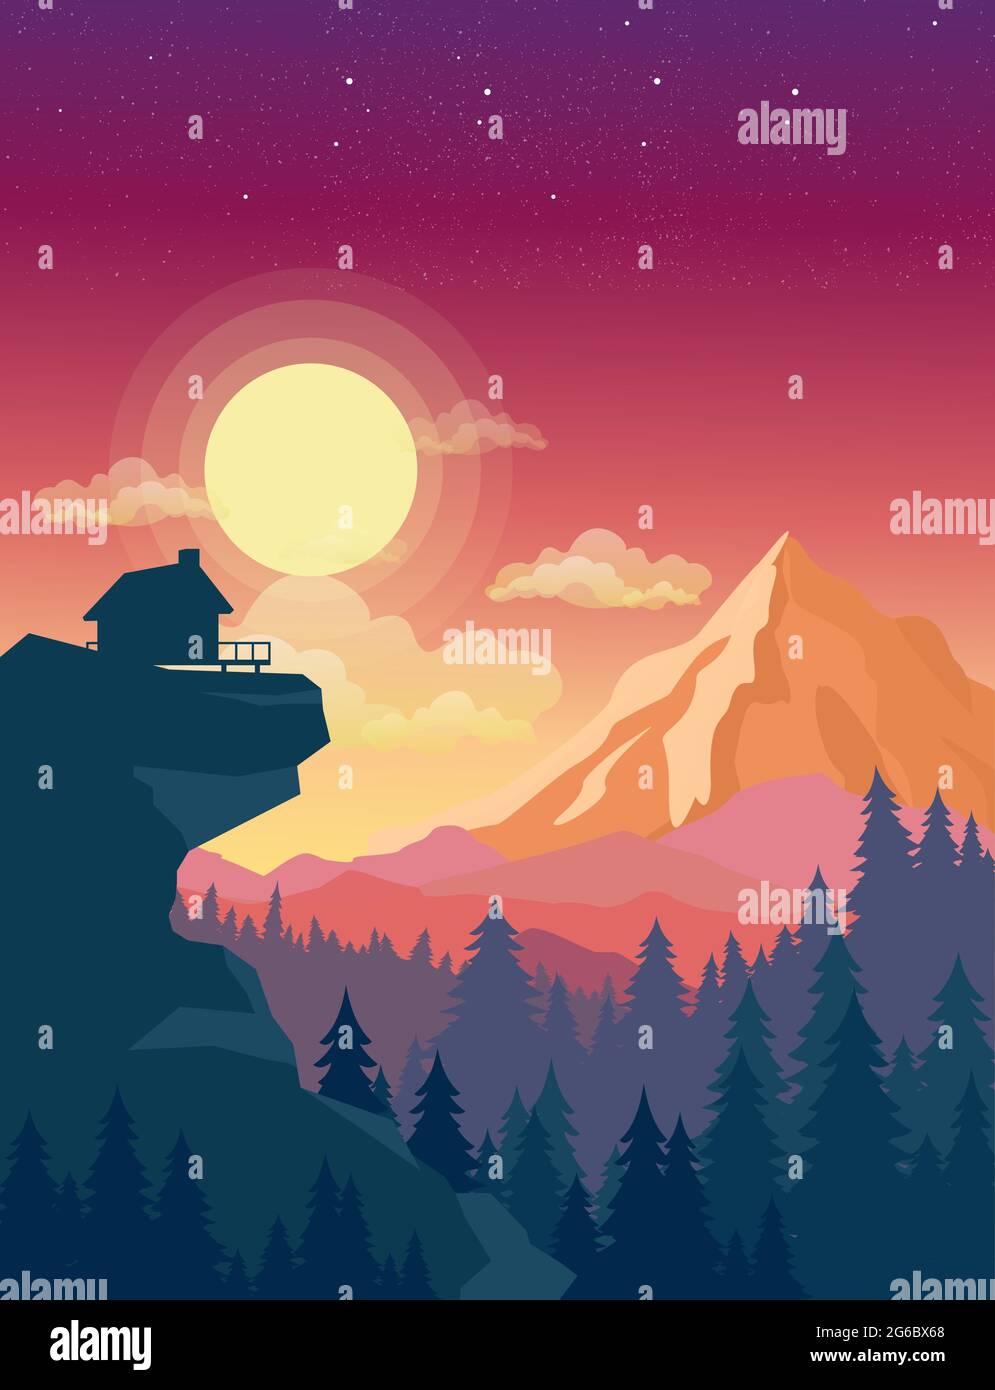 Vektor-Illustration des Hauses auf dem Berg mit schönen Sonnenuntergang in den Bergen Landschaft auf dem Hintergrund, Sonne und Wolken am Himmel in flachem Stil. Stock Vektor